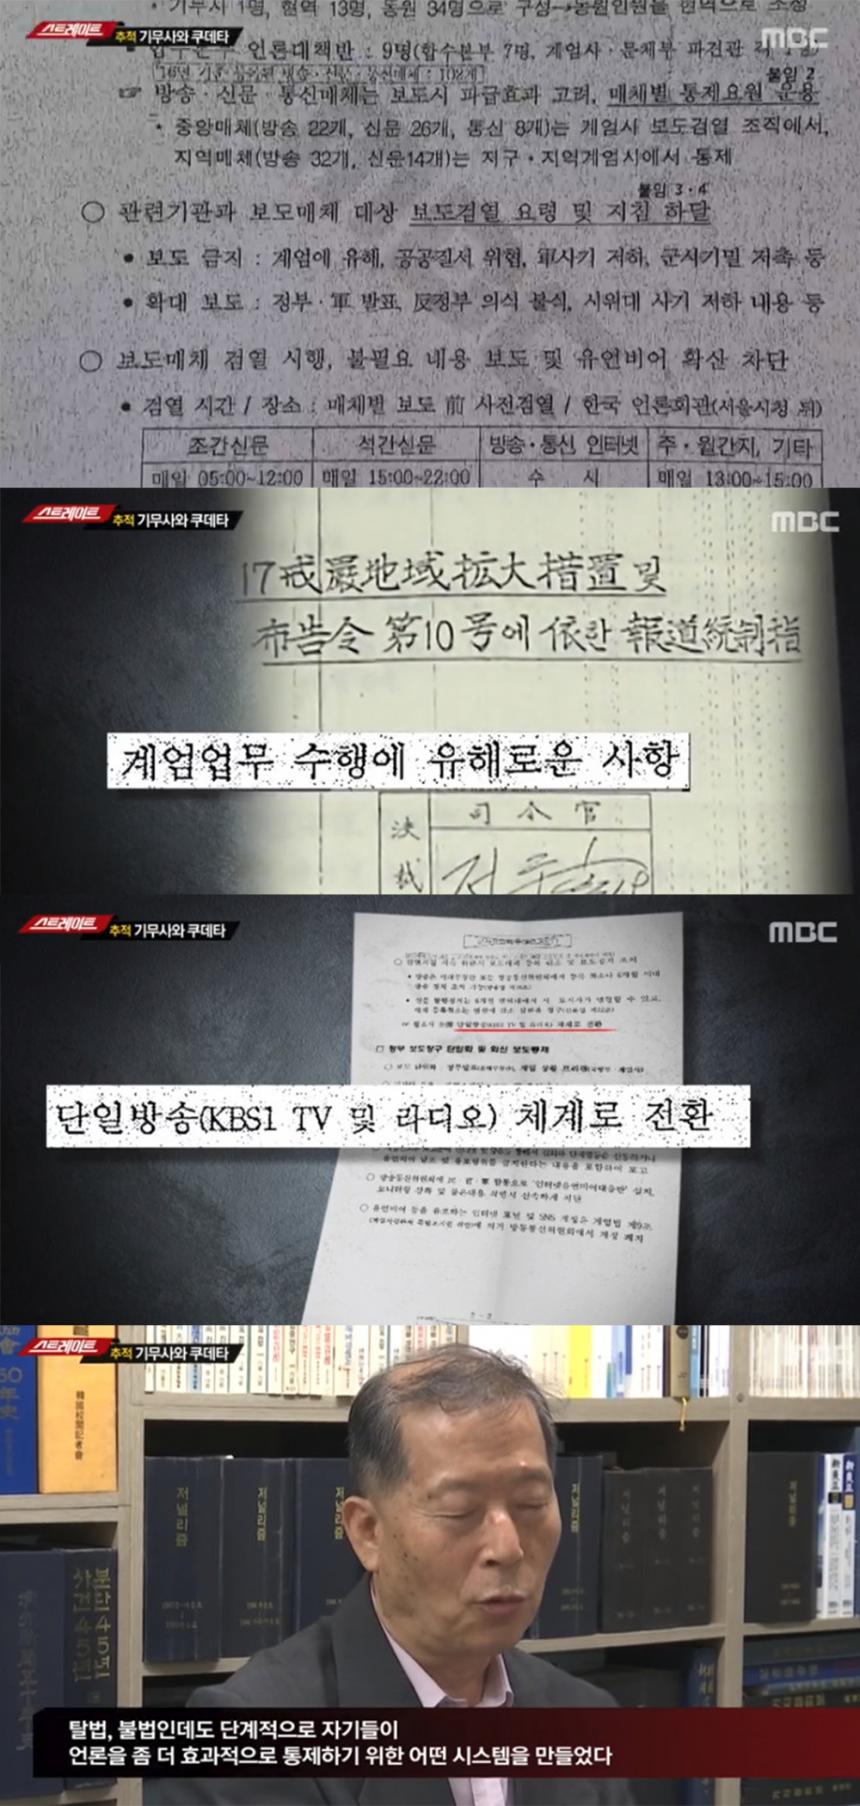 MBC 탐사기획 ‘스트레이트’ 방송 캡처